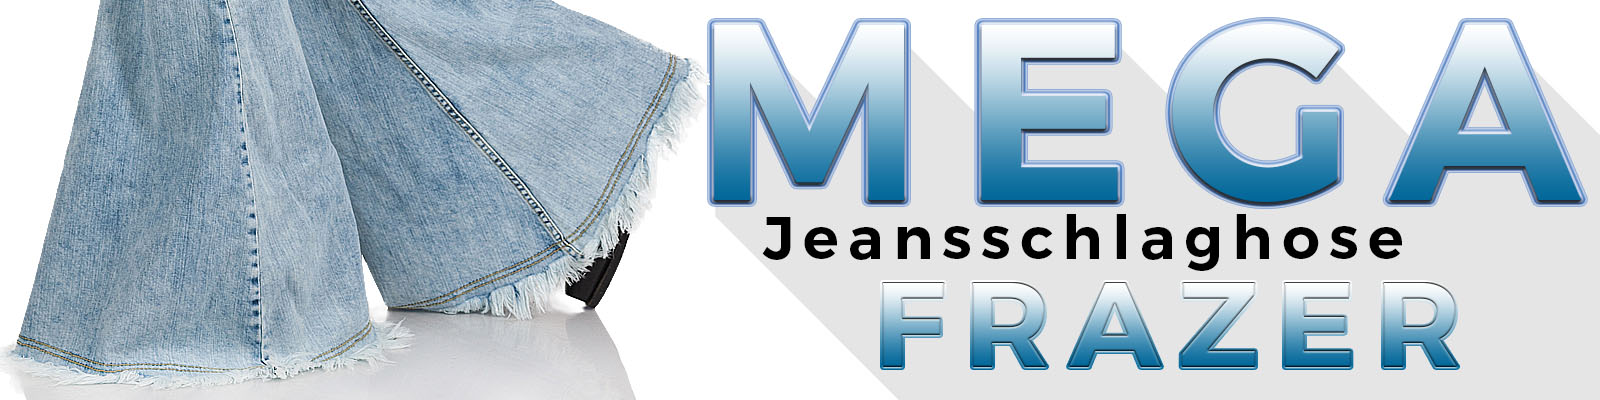 Comycom Mega Jeansschlaghose Frazer Banner